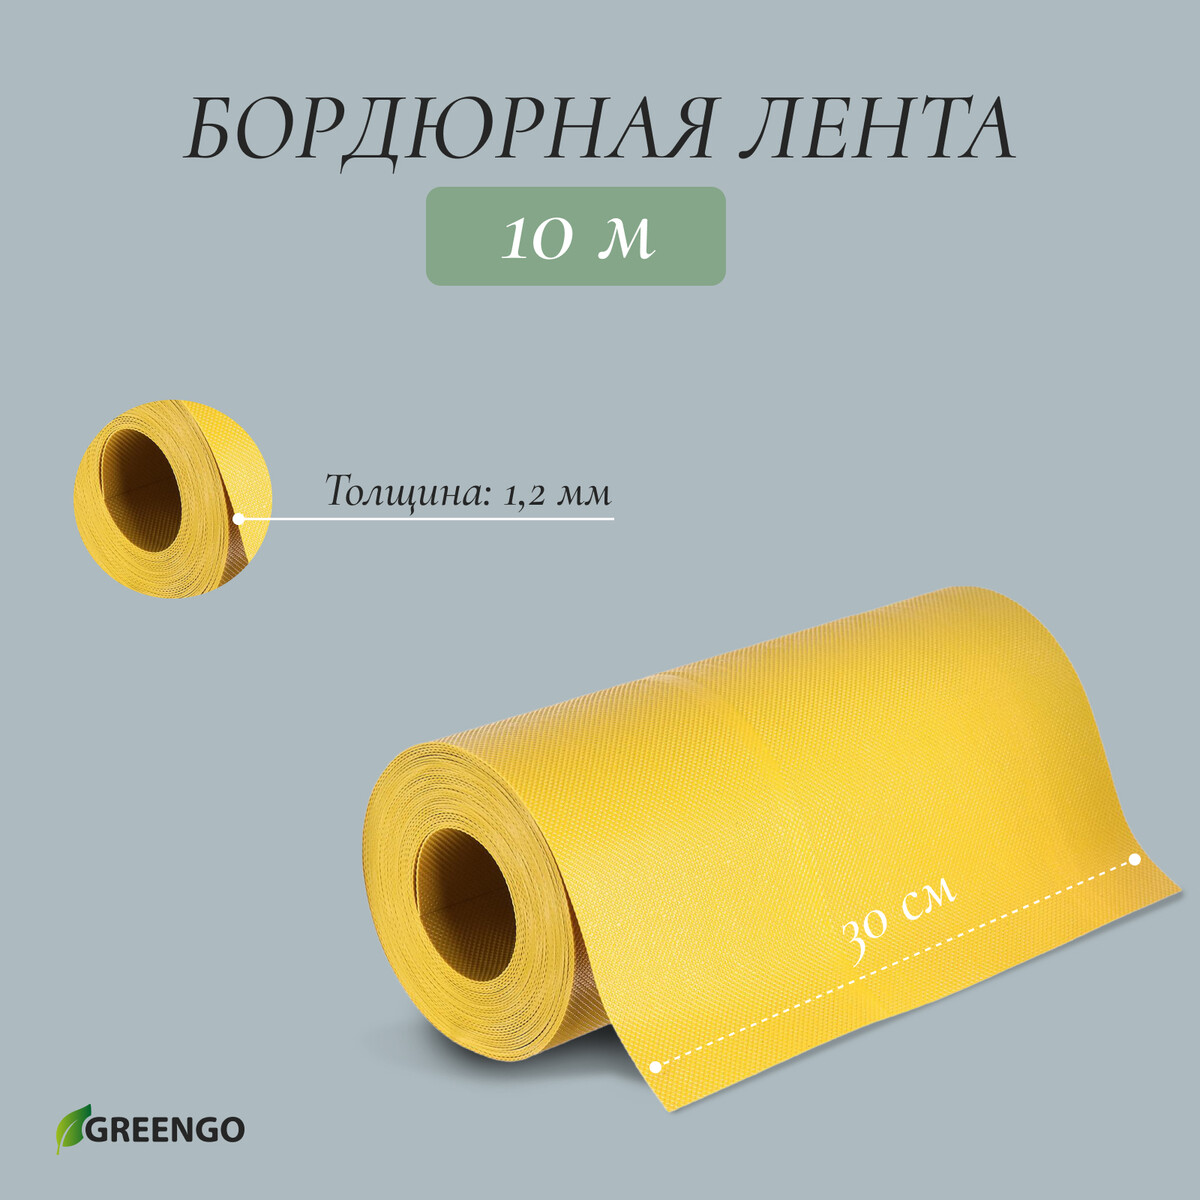 Лента бордюрная, 0.3 × 10 м, толщина 1.2 мм, пластиковая, желтая, greengo